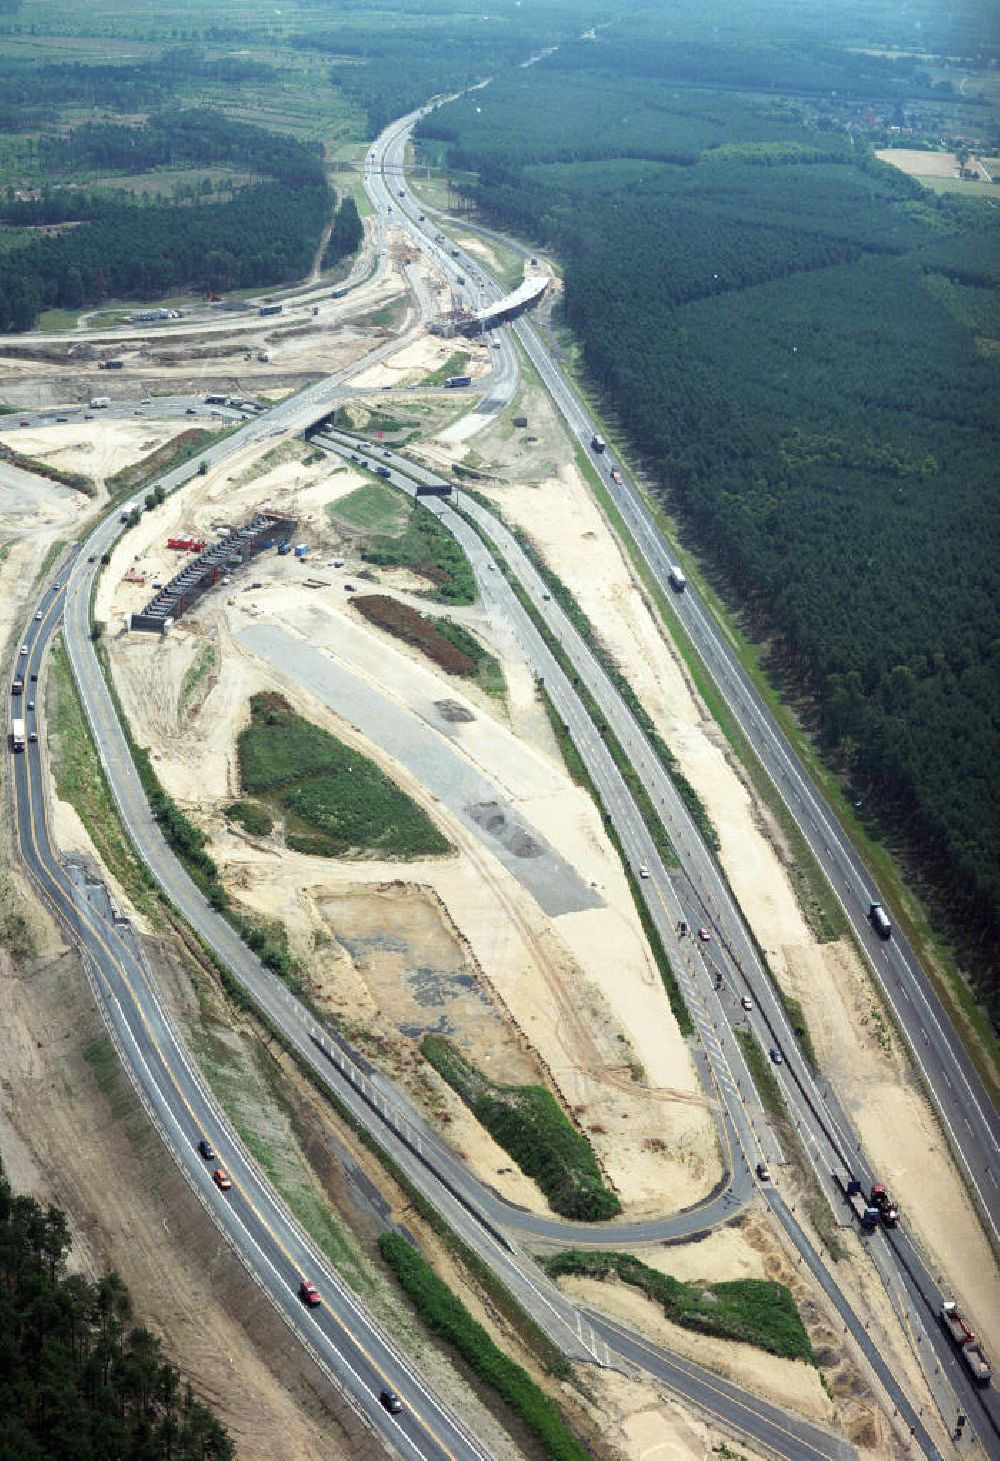 Luftbild SPREEAU - Umbau- und Erweiterungs-Baustelle des Autobahndreieck Spreeau